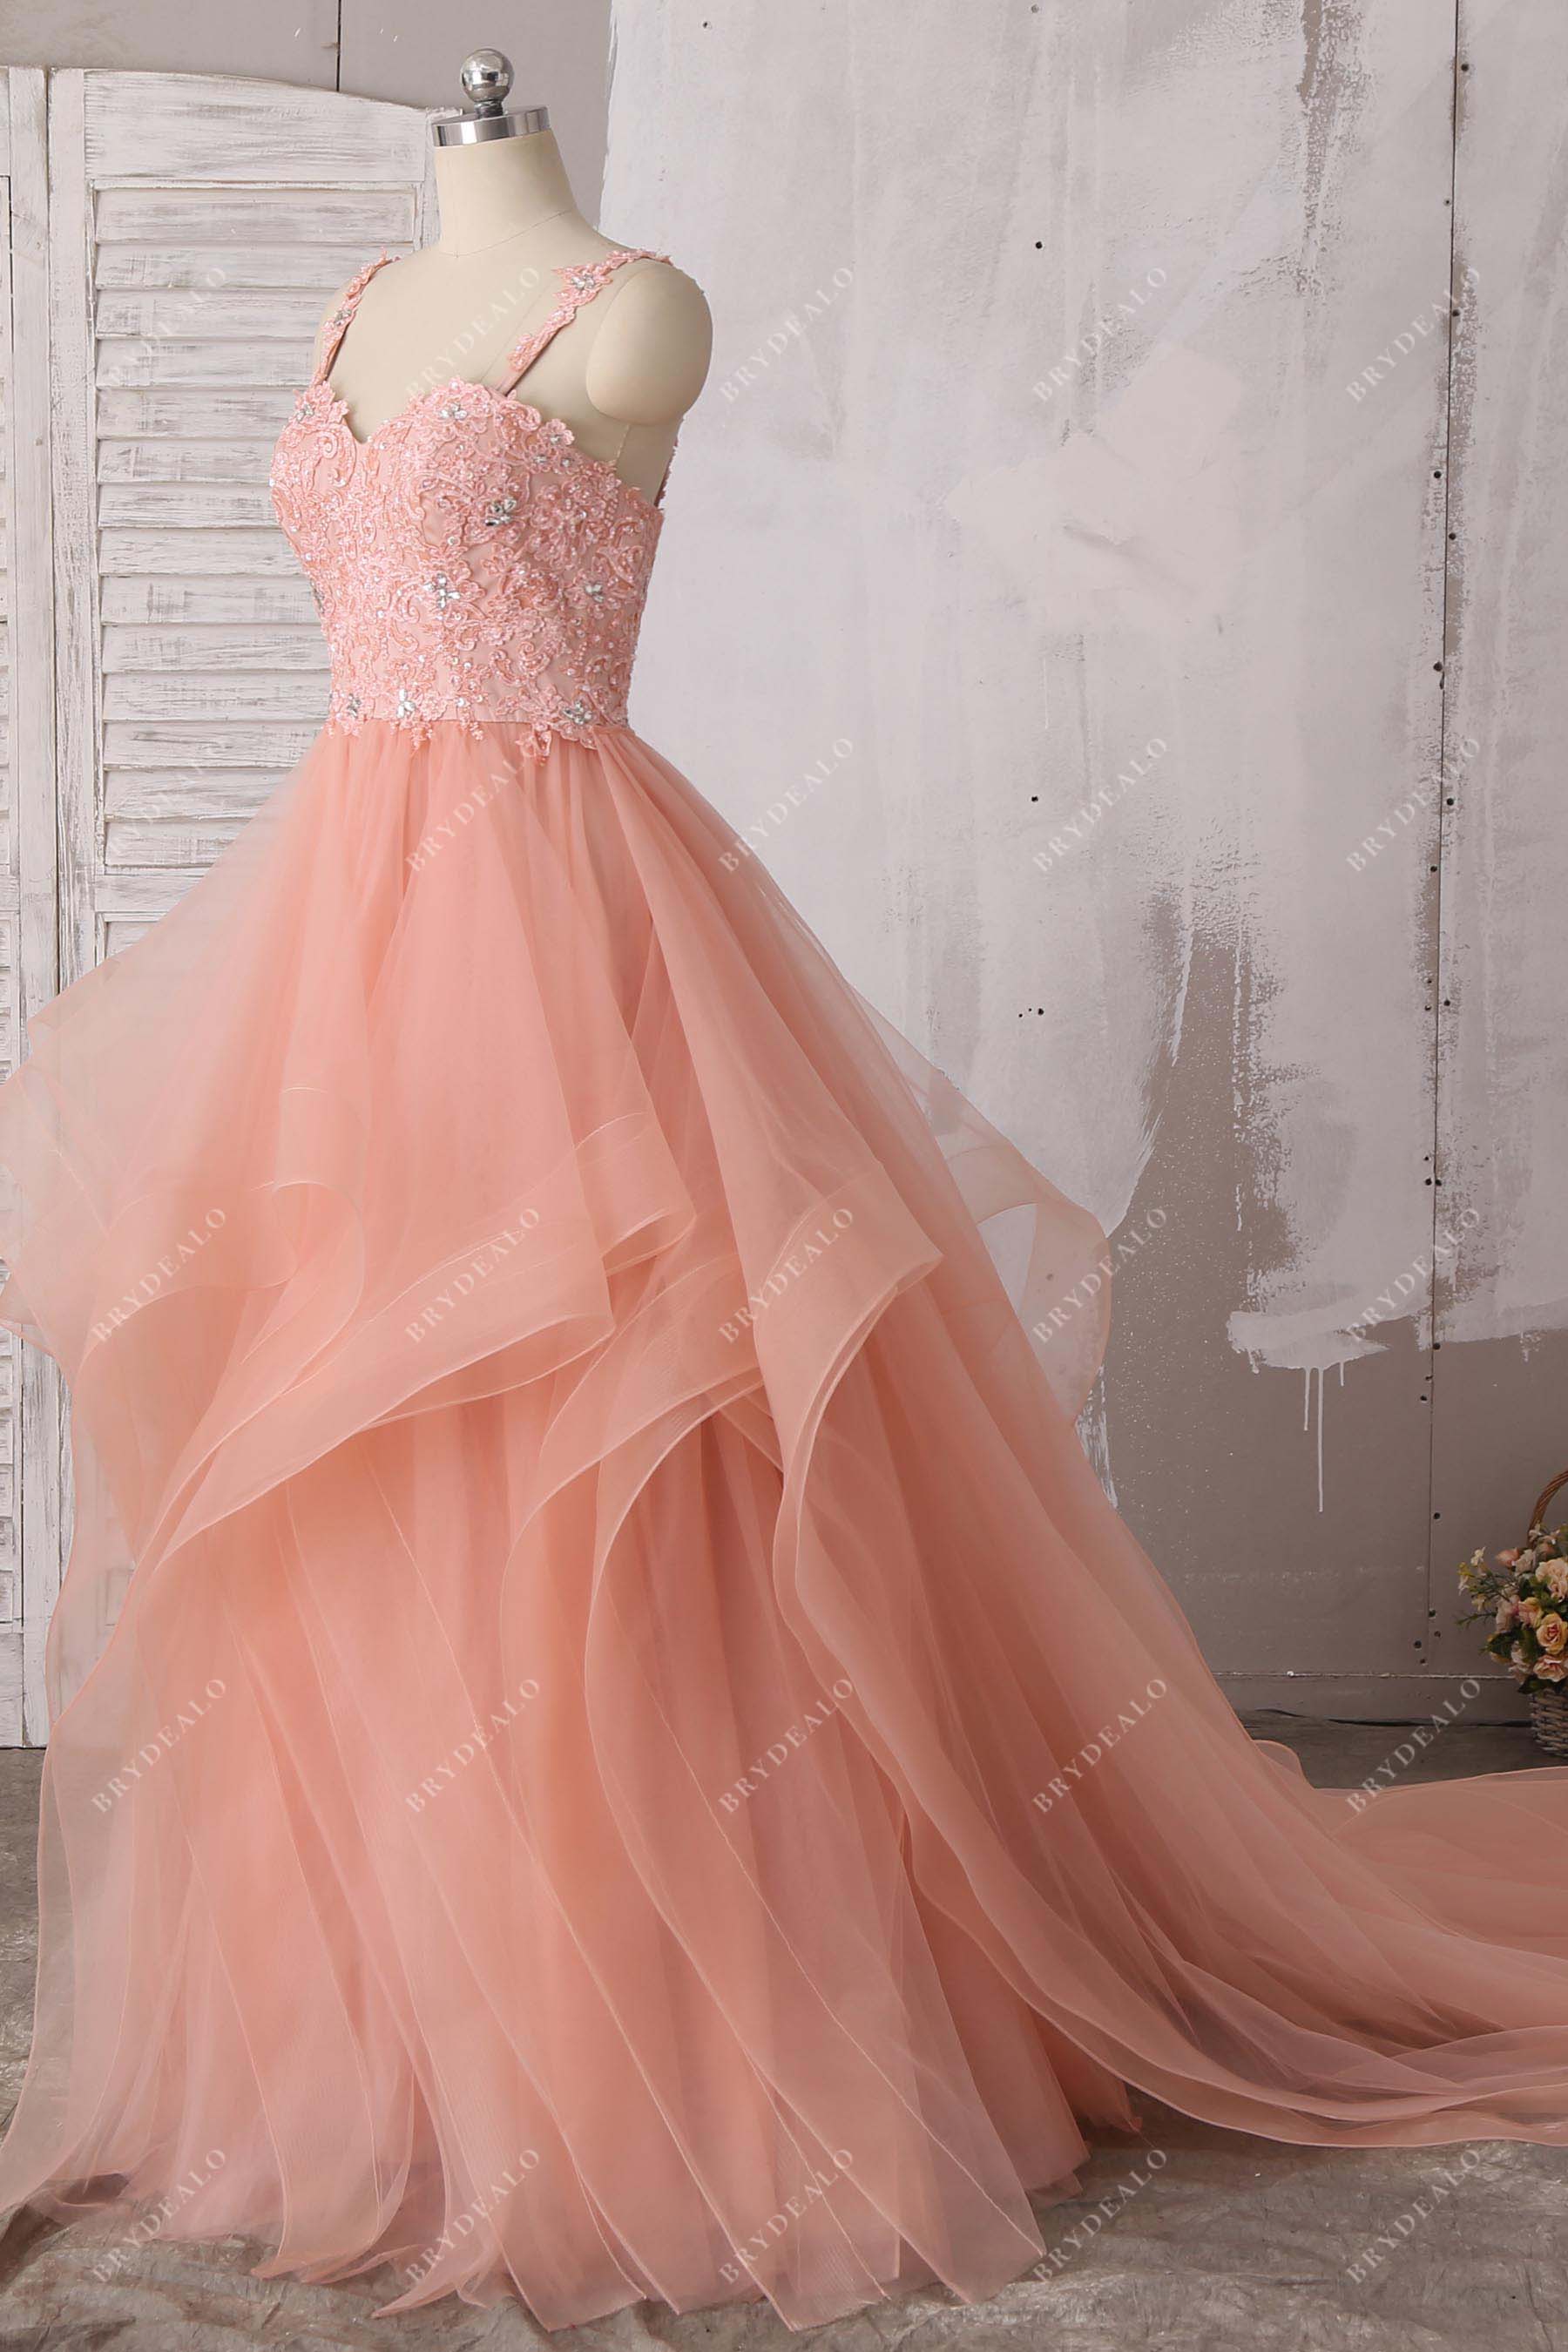 luxury ruffled tulle sleeveless lace prom dress